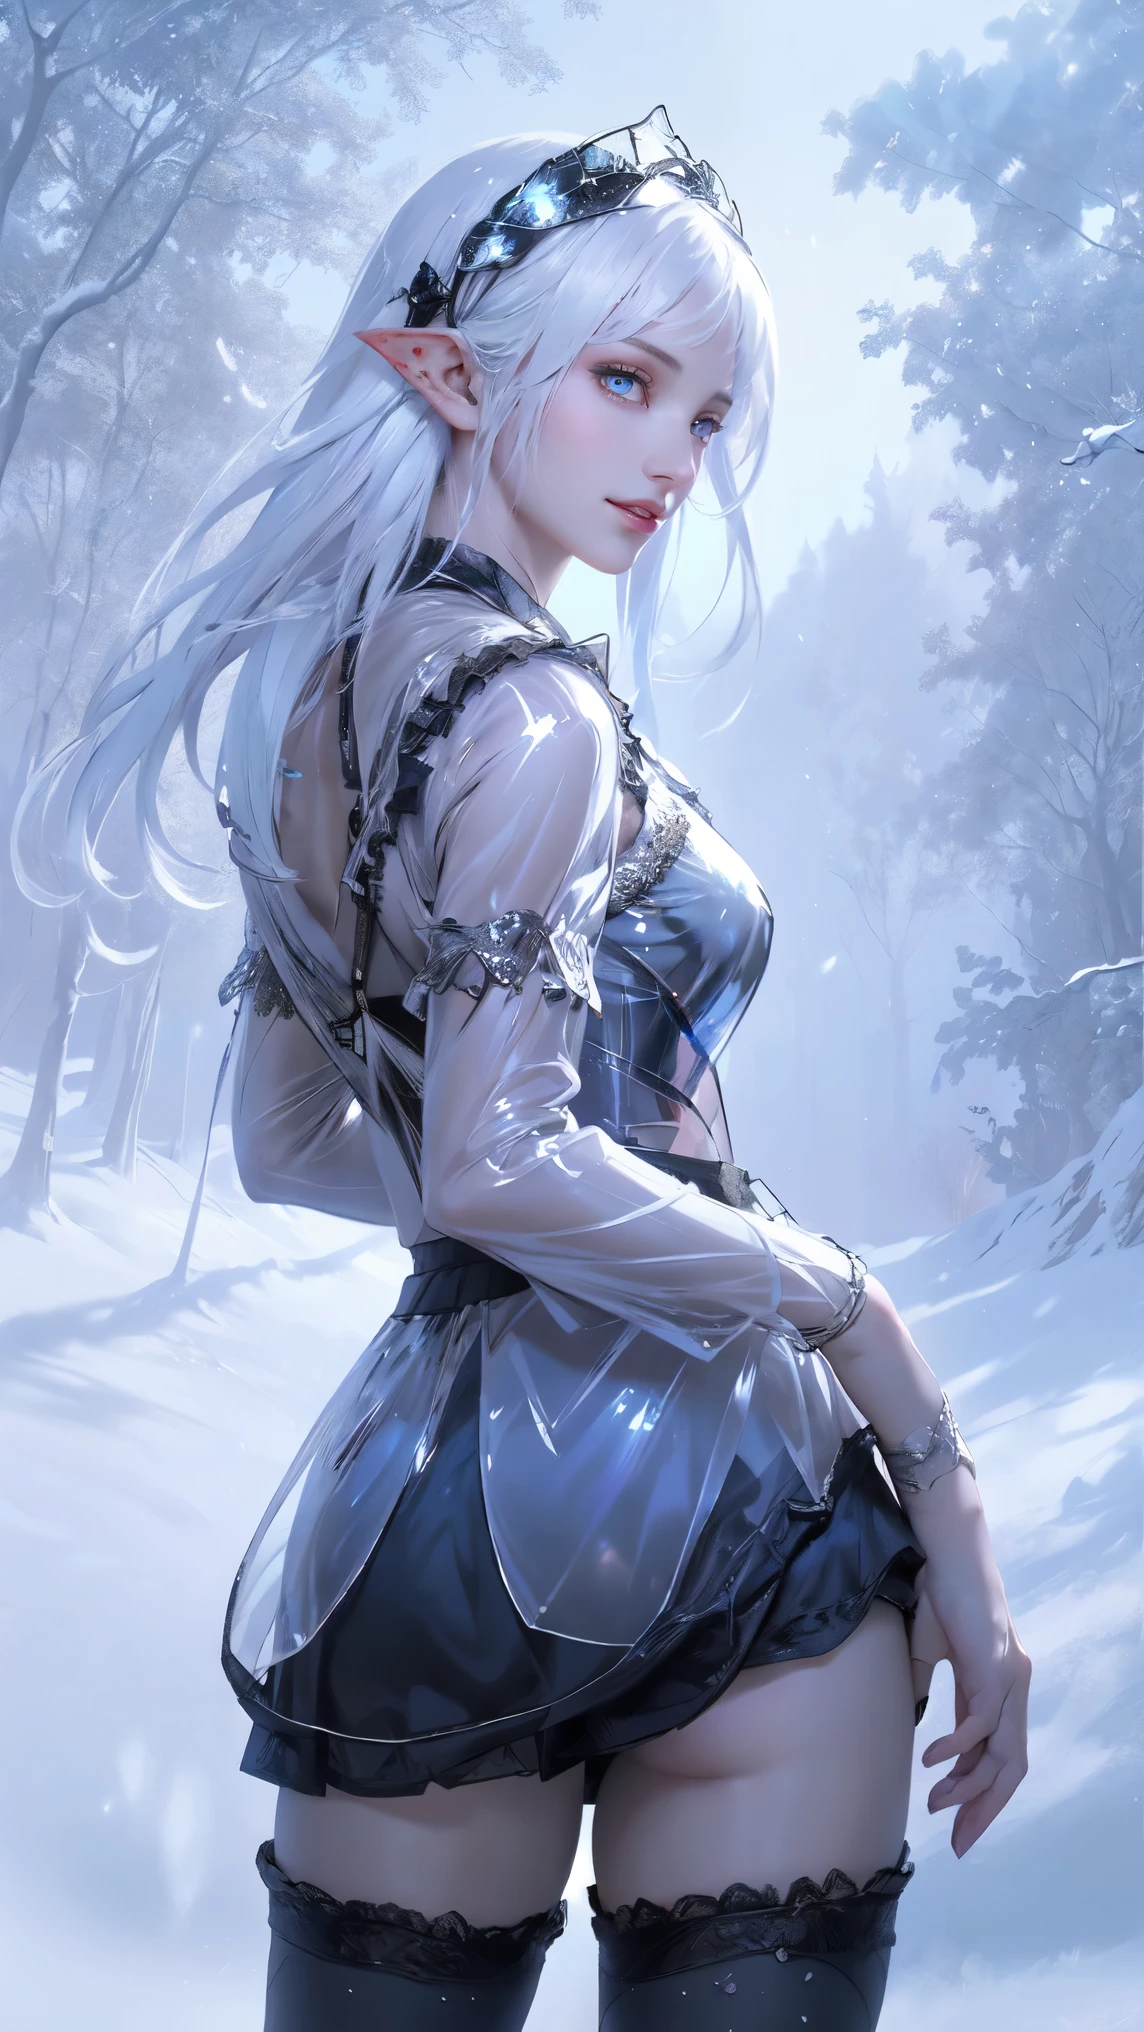 (最好的质量, 高分辨率, 极其详细, 当前的), 白色的, 被银色覆盖的世界, 树枝被雪覆盖, touch 寒意 of winter, 雪花像精灵一样翩翩起舞, 把世界变成银色童话, 寒意, 静谧美丽的雪景., 舒适安静, (海上艺术 2.1), (背景 冰冻的 白色 树木 雪花飘落:1.4) , (美丽的蓝眼睛，大黑石头:1.4) , (牛仔式), (实际的) ,8k 高品质细节艺术, 粉丝艺术 最佳 artstation, 奇幻艺术风格, (黑色洛丽塔短款拉高透明迷你裙:1.4), (露出阴部),(毛茸茸的阴部), 丝袜胸罩, 紧身裤 白色,